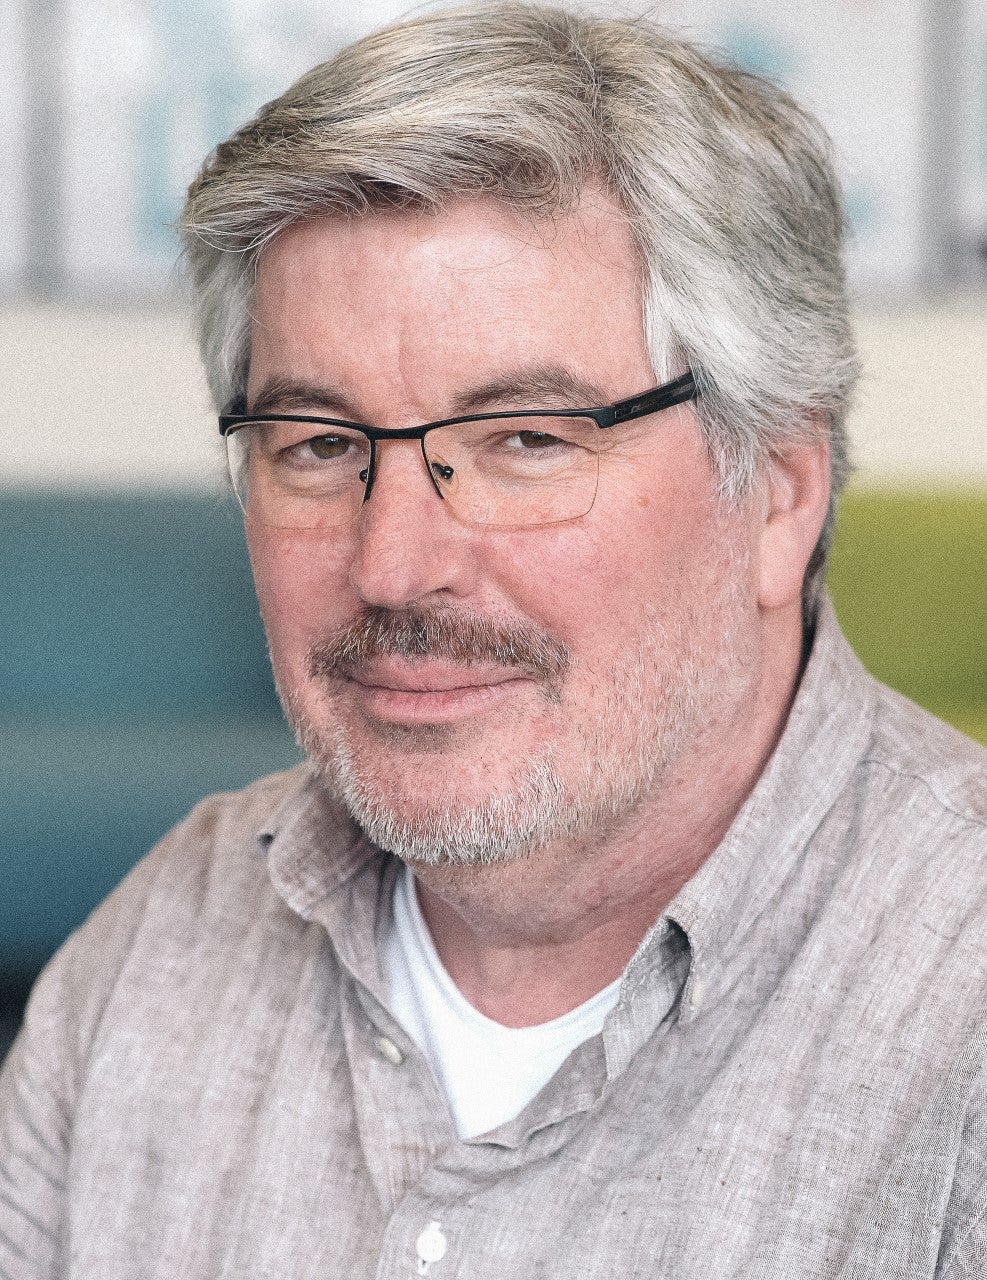 Portret van man met grijs haar en bril met donkere snor en grijze stoppelbaard gekleed in een grijs overhemd en wit t-shirt.